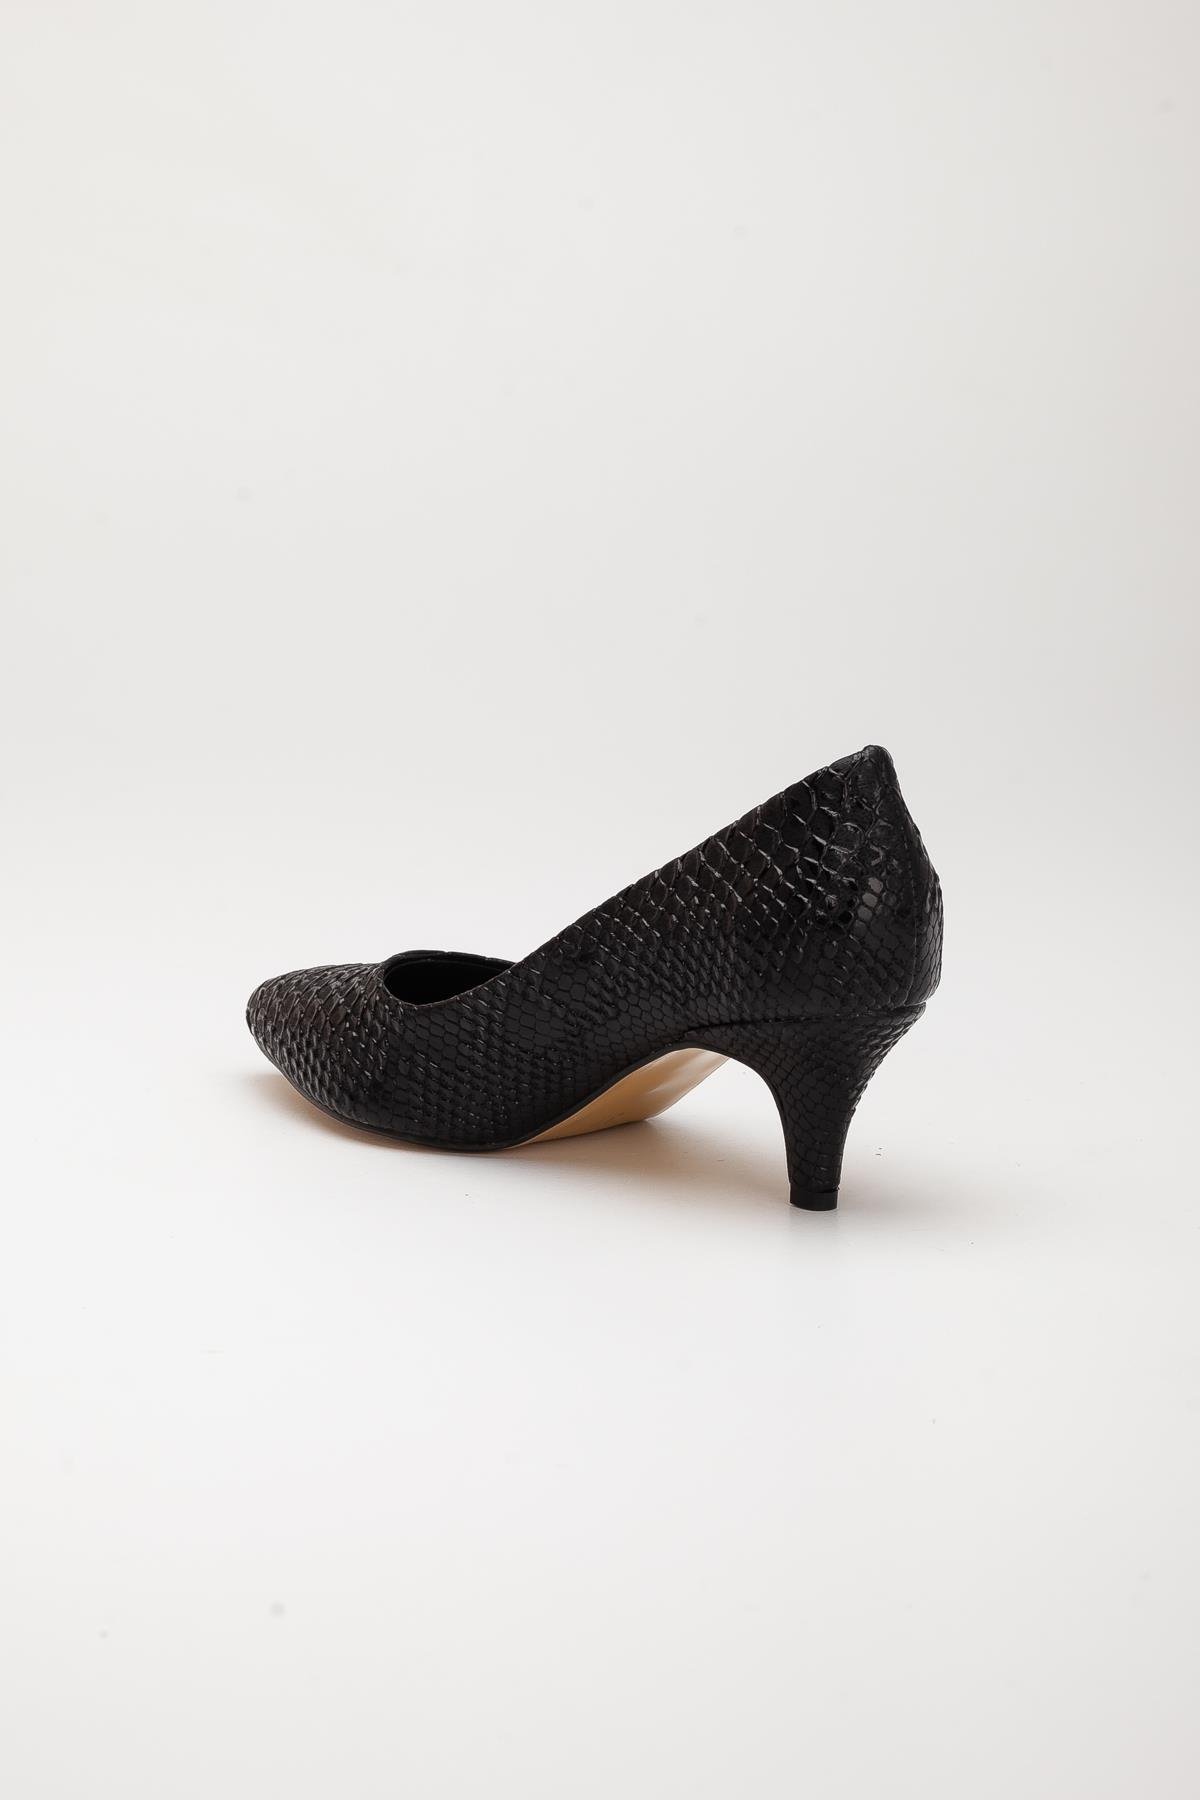 Baskılı Deri Sade Model Siyah Büyük Numara Kadın Ayakkabısı Topuklu